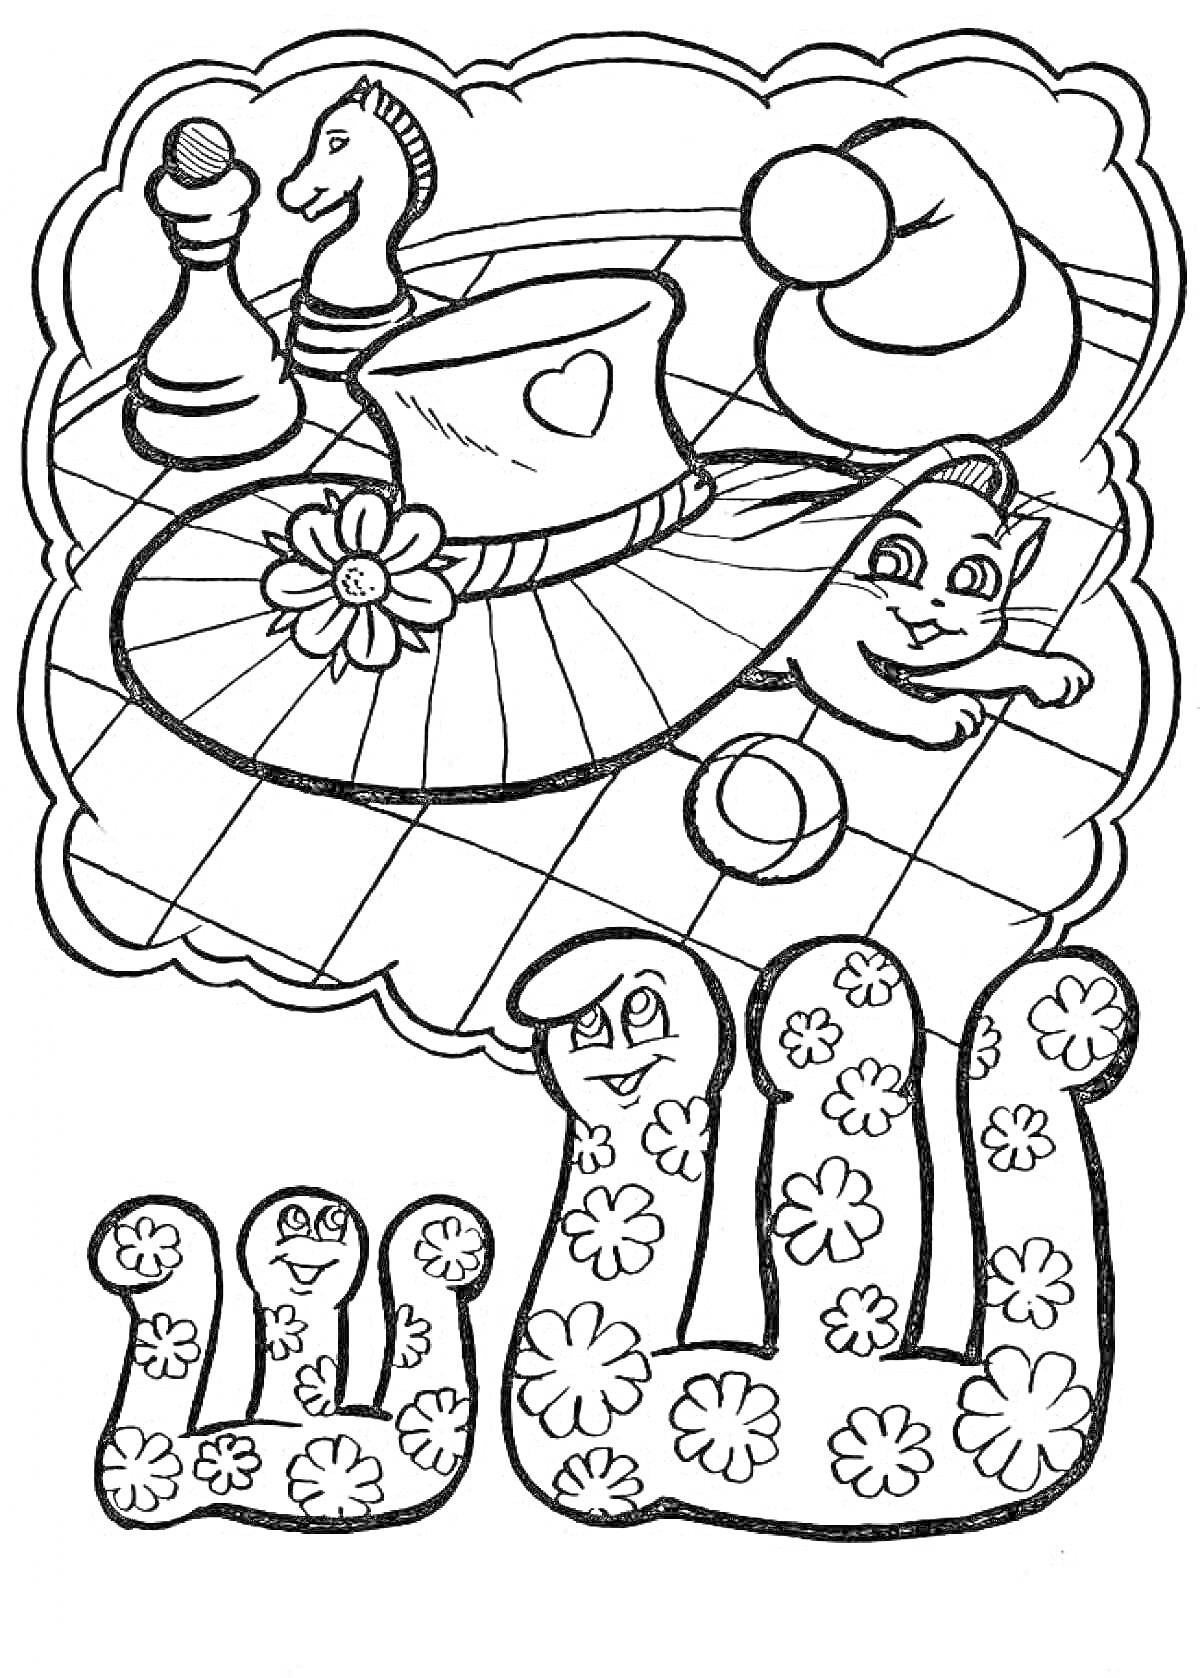 Раскраска Шляпа с цветком, шахматные фигуры, ребёнок с мячиком, улыбчивые буквы Щ